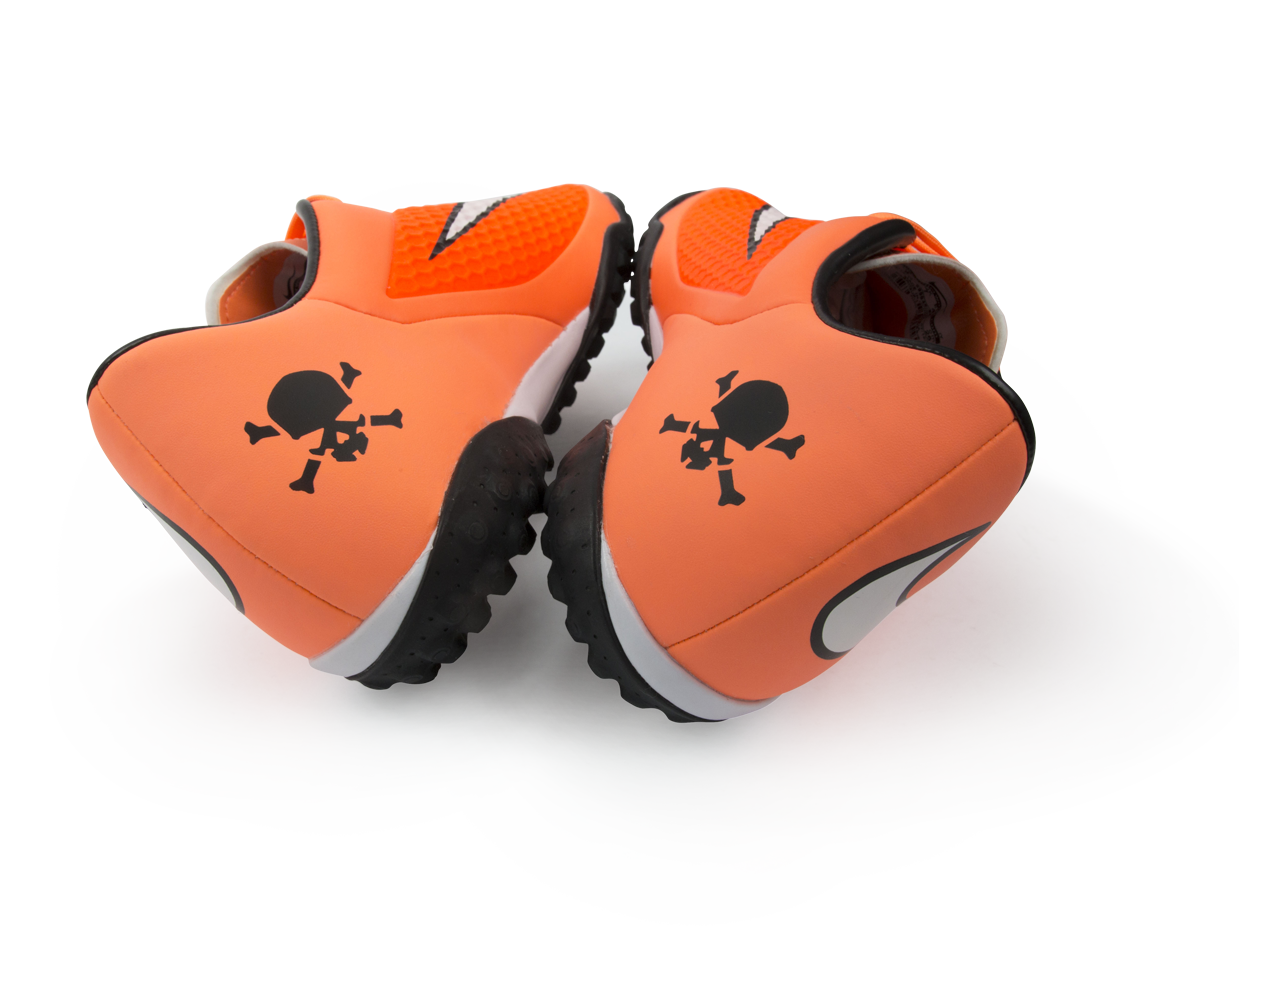 Nike Men's Hypervenom Phelon Turf Soccer Shoes Hyper Crimson/White/Atomic Orange